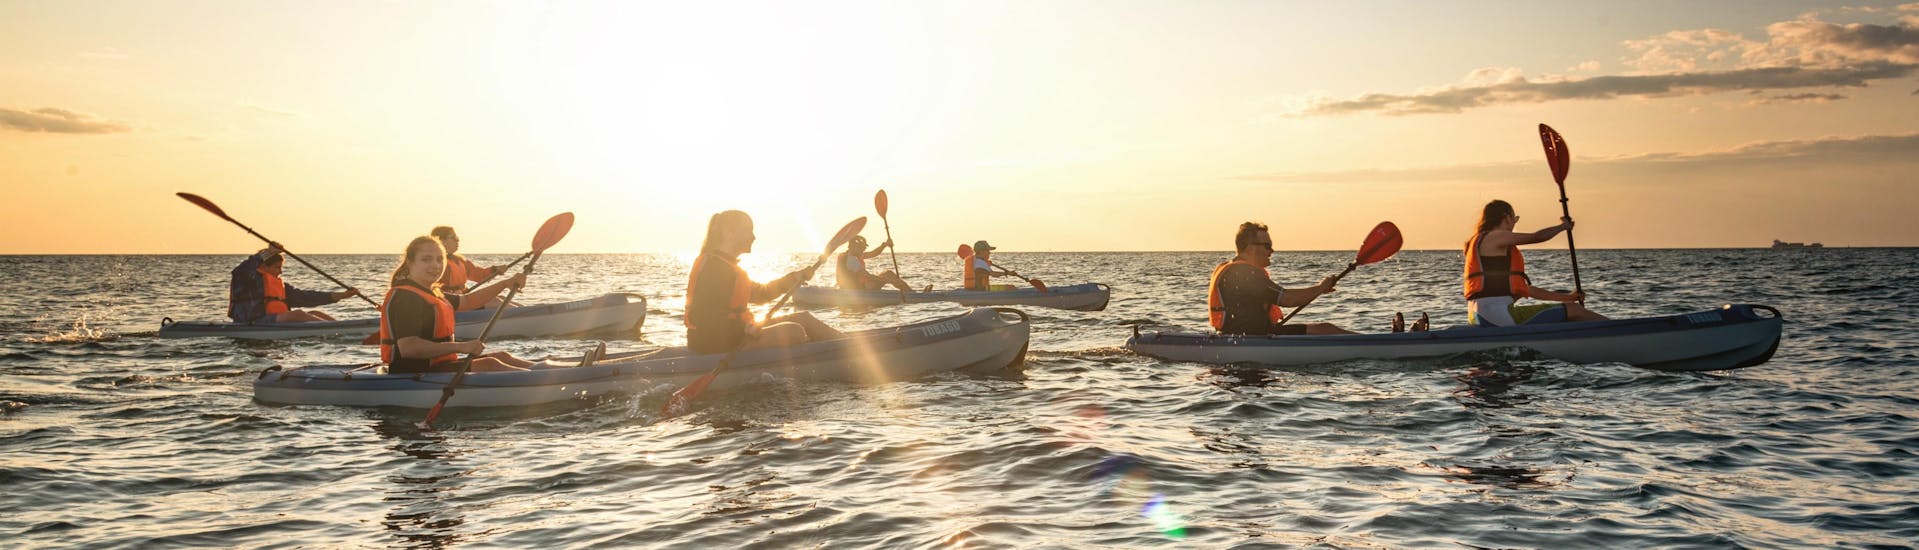 Sunset kayak tour by Sea Kayak Piran 